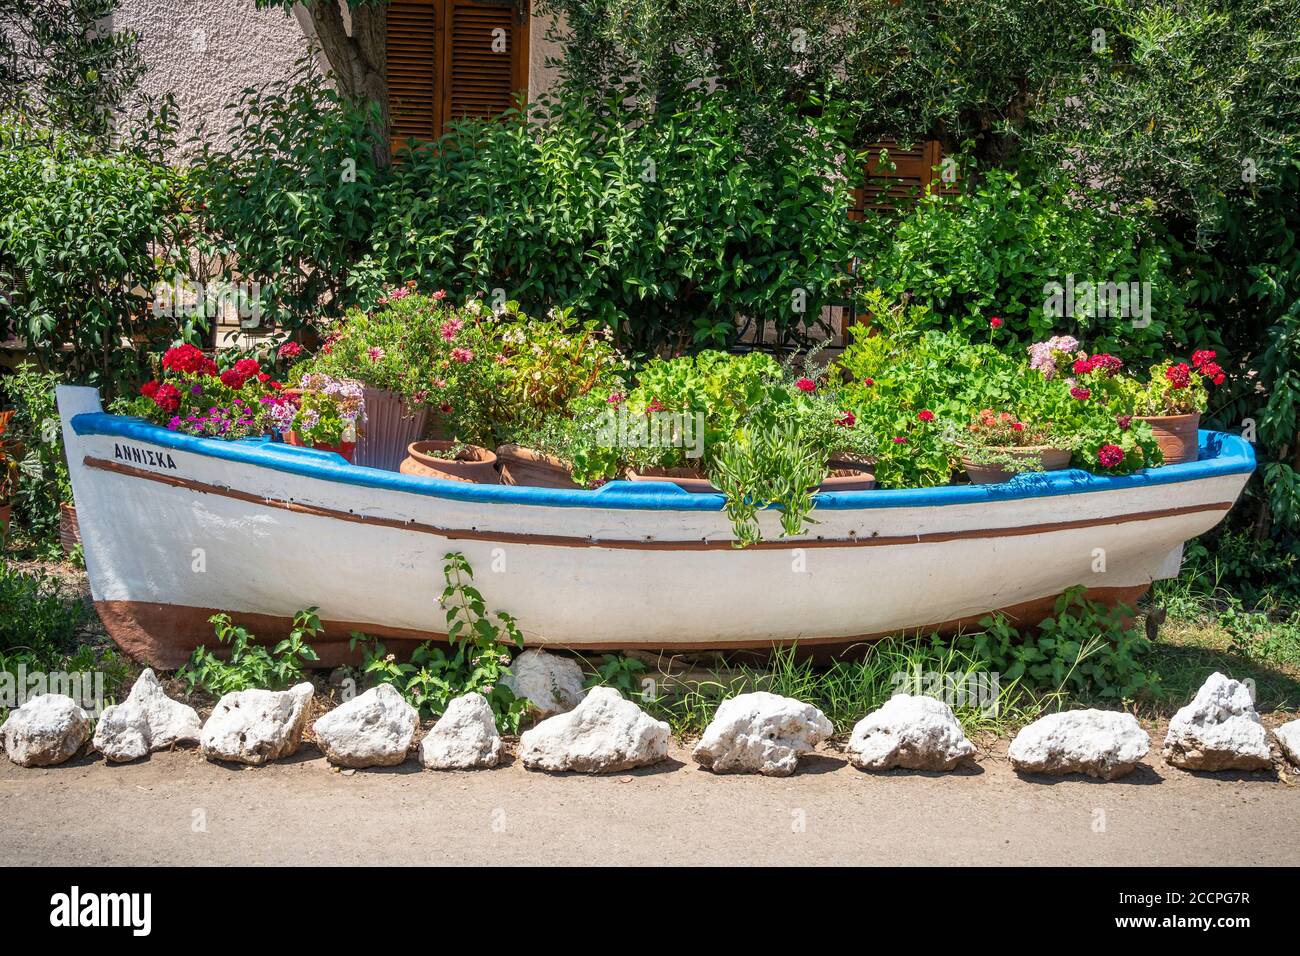 Una vecchia barca a remi riutilizzata come contenitore per le piante, nel villaggio di Kardamyli, nel mani, Peloponneso, Grecia. Foto Stock